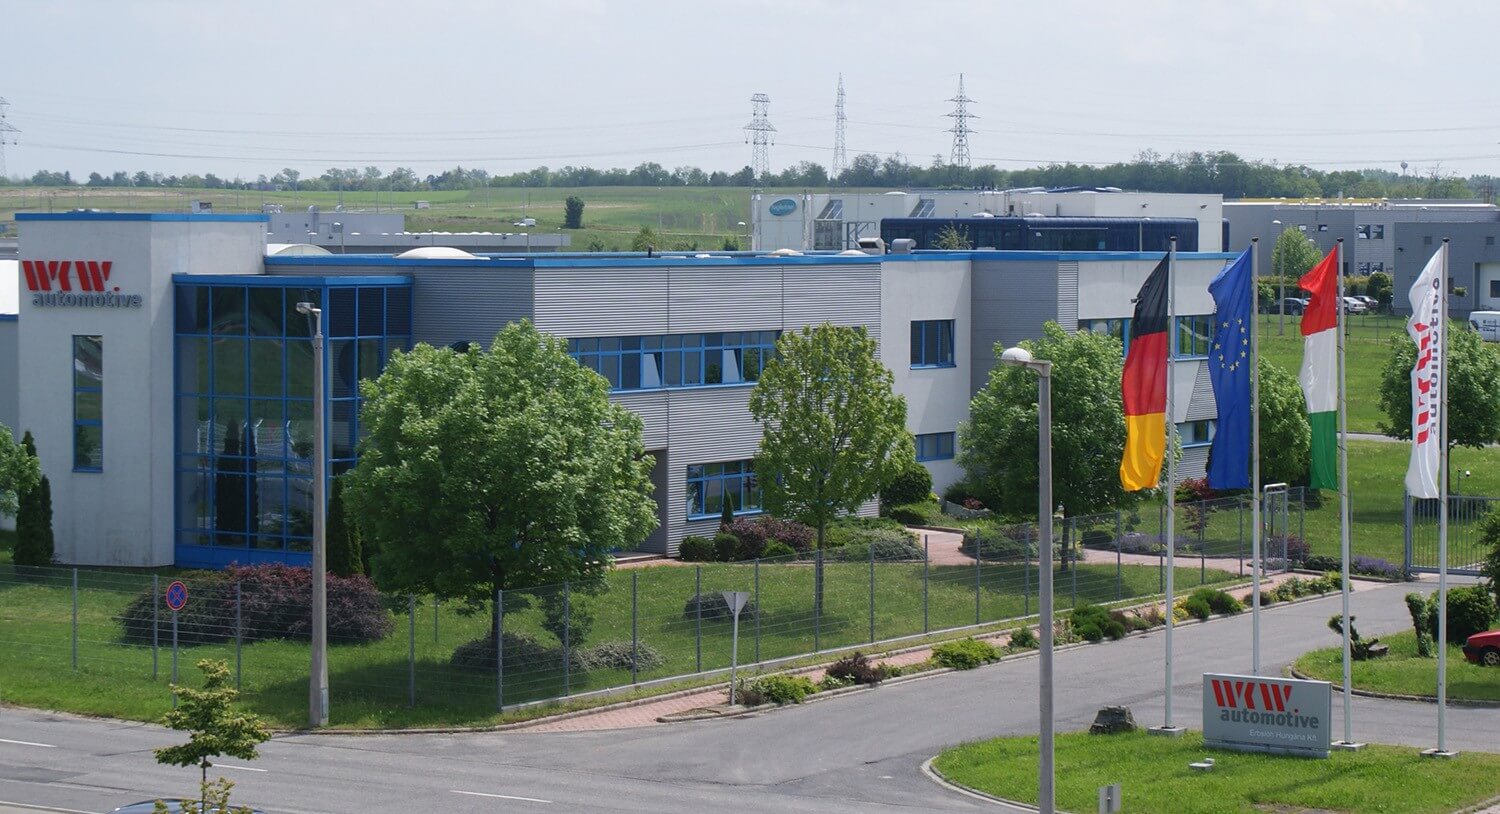 Egyedülálló technológiával épül Győrben autóipari központ